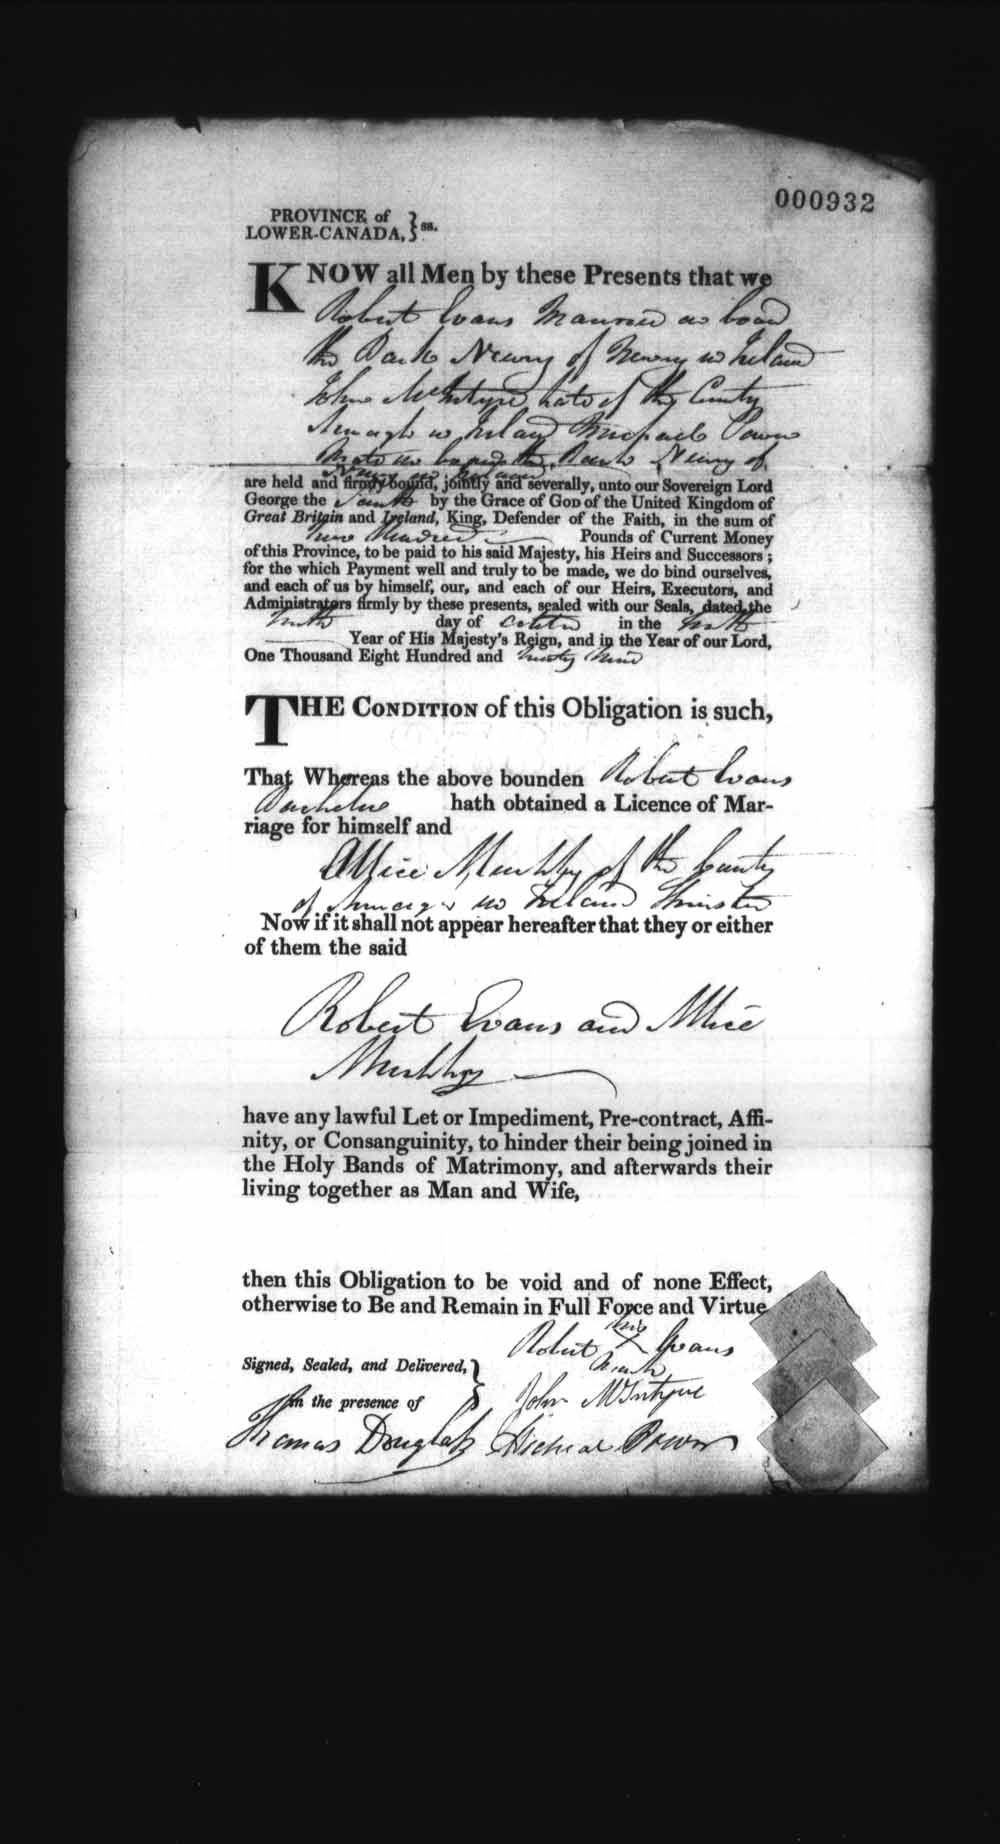 Page numérisé de Cautionnements de mariages pour le Haut-Canada et le Bas-Canada (1779-1865) pour l'image numéro: e008237036